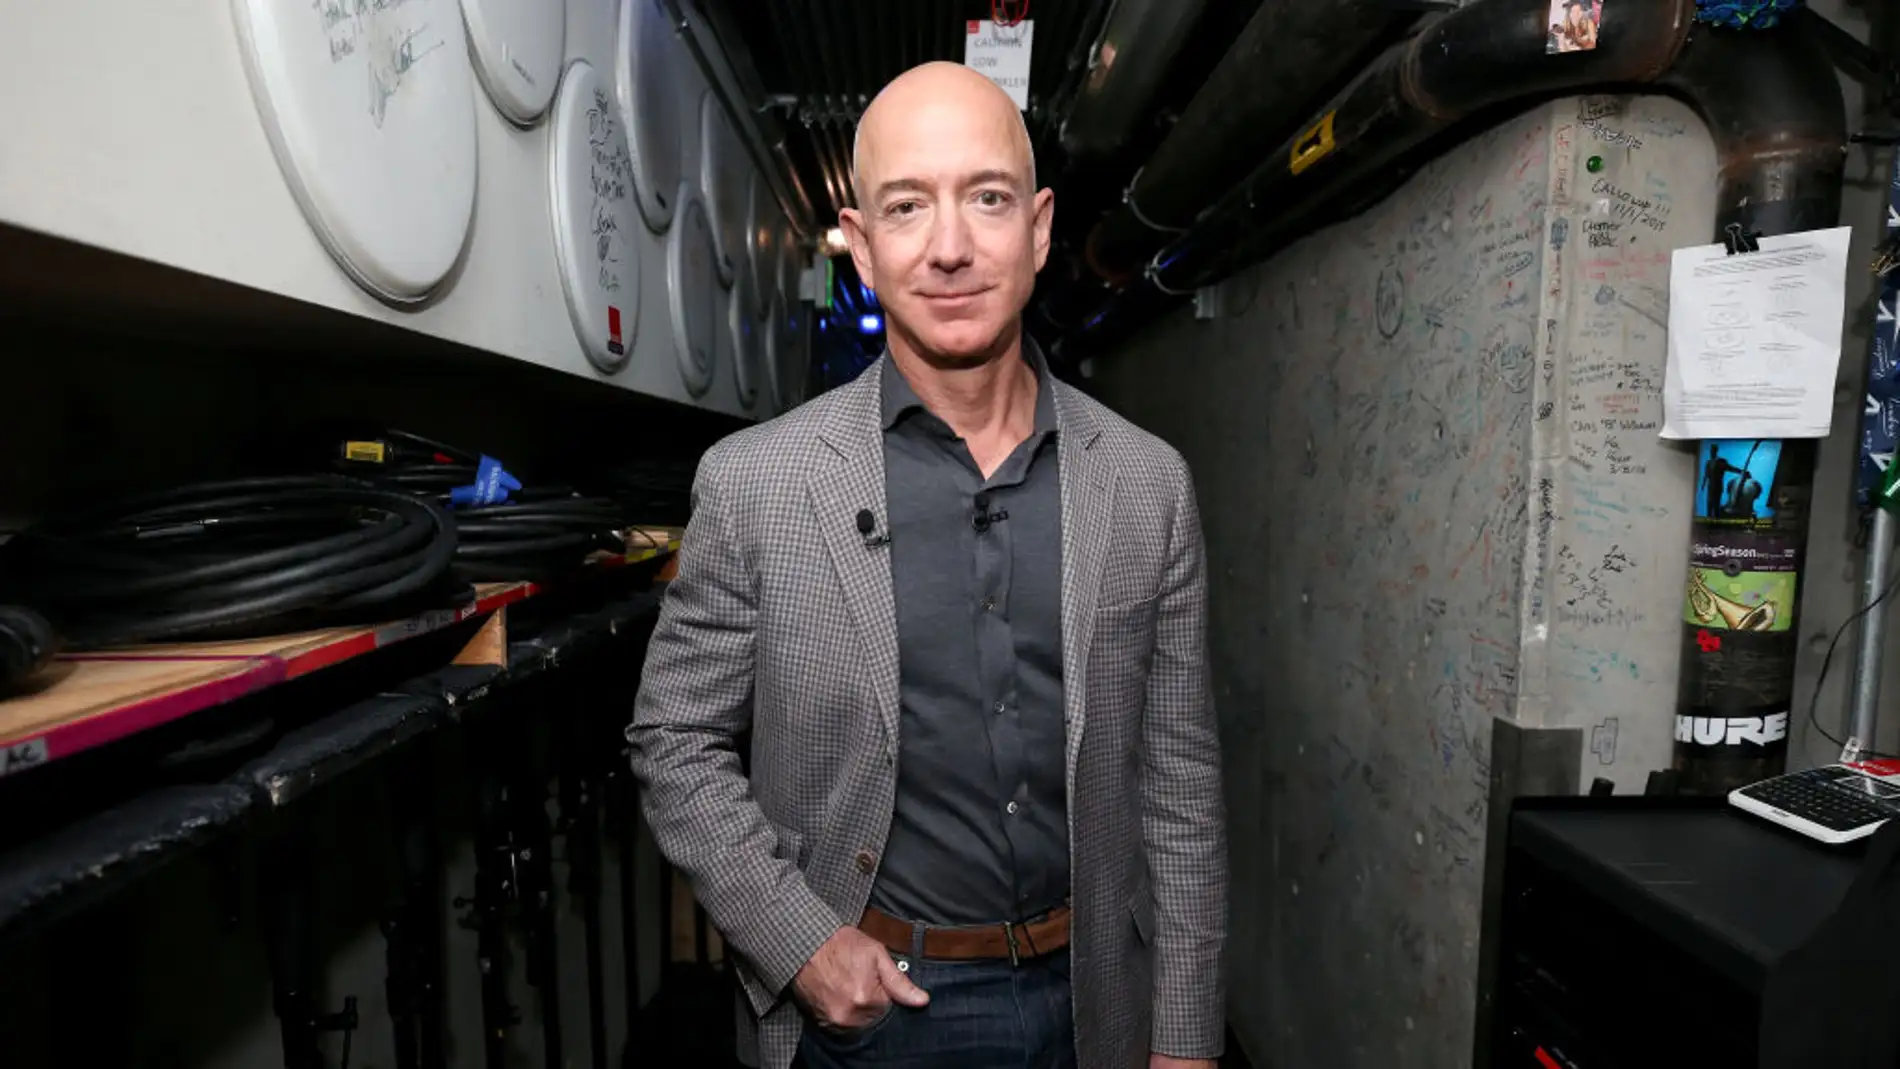 Cuánto dinero ha ganado Jeff Bezos con Amazon